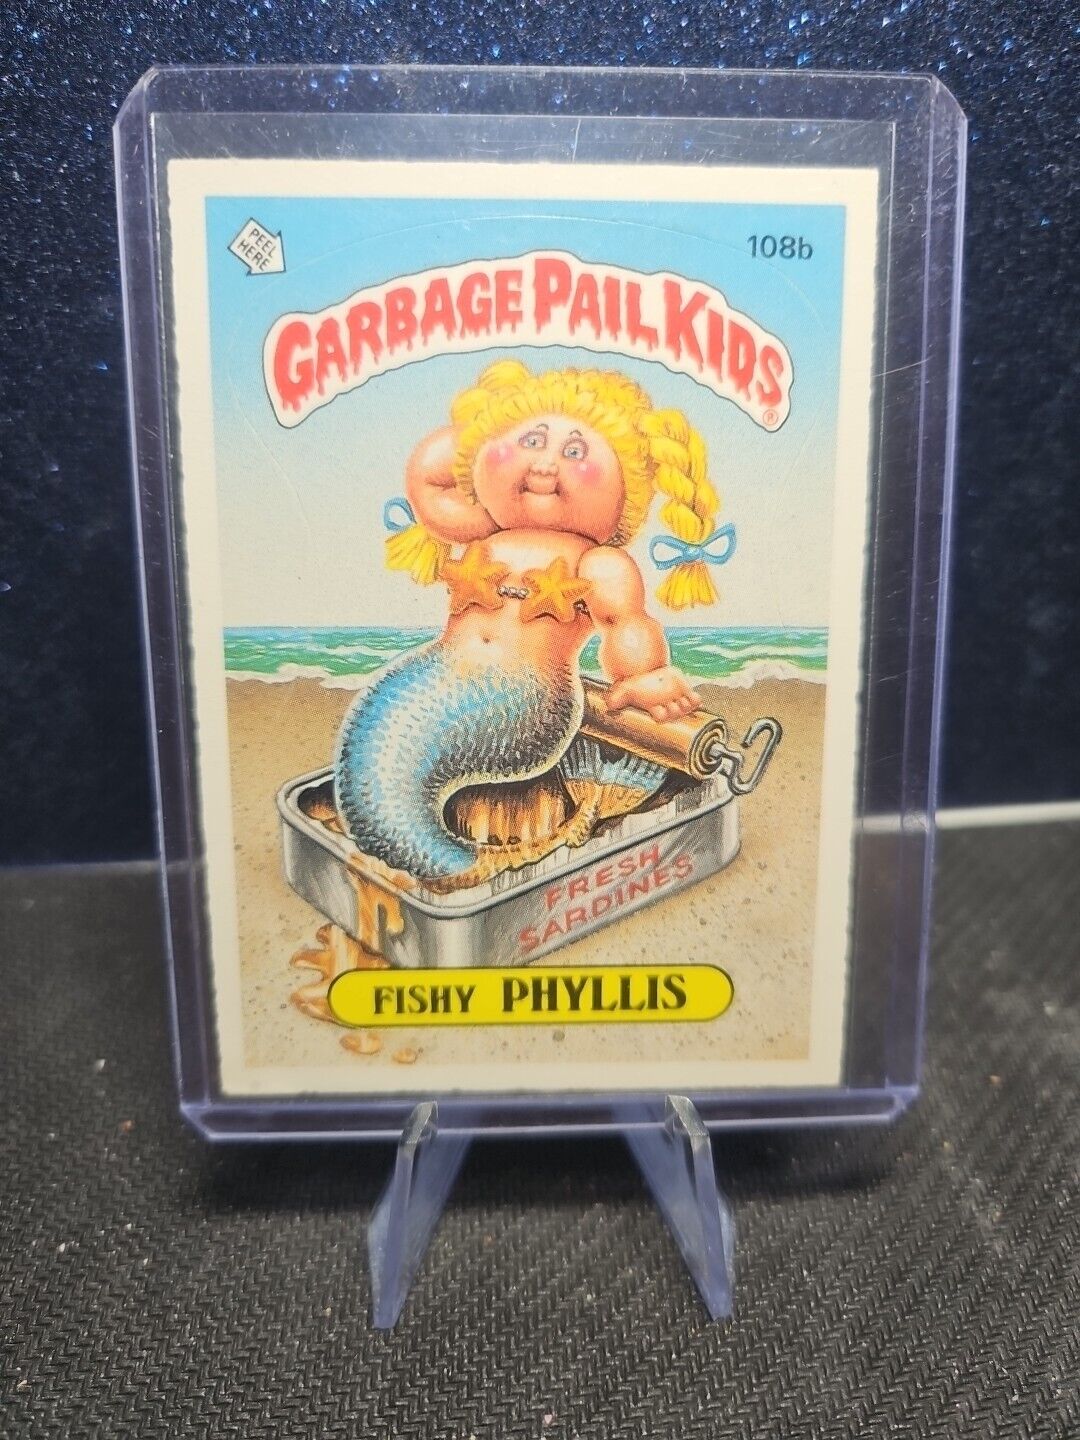 1986 Topps # 108b Fishy Phyllis Garbage Pail Kids Card